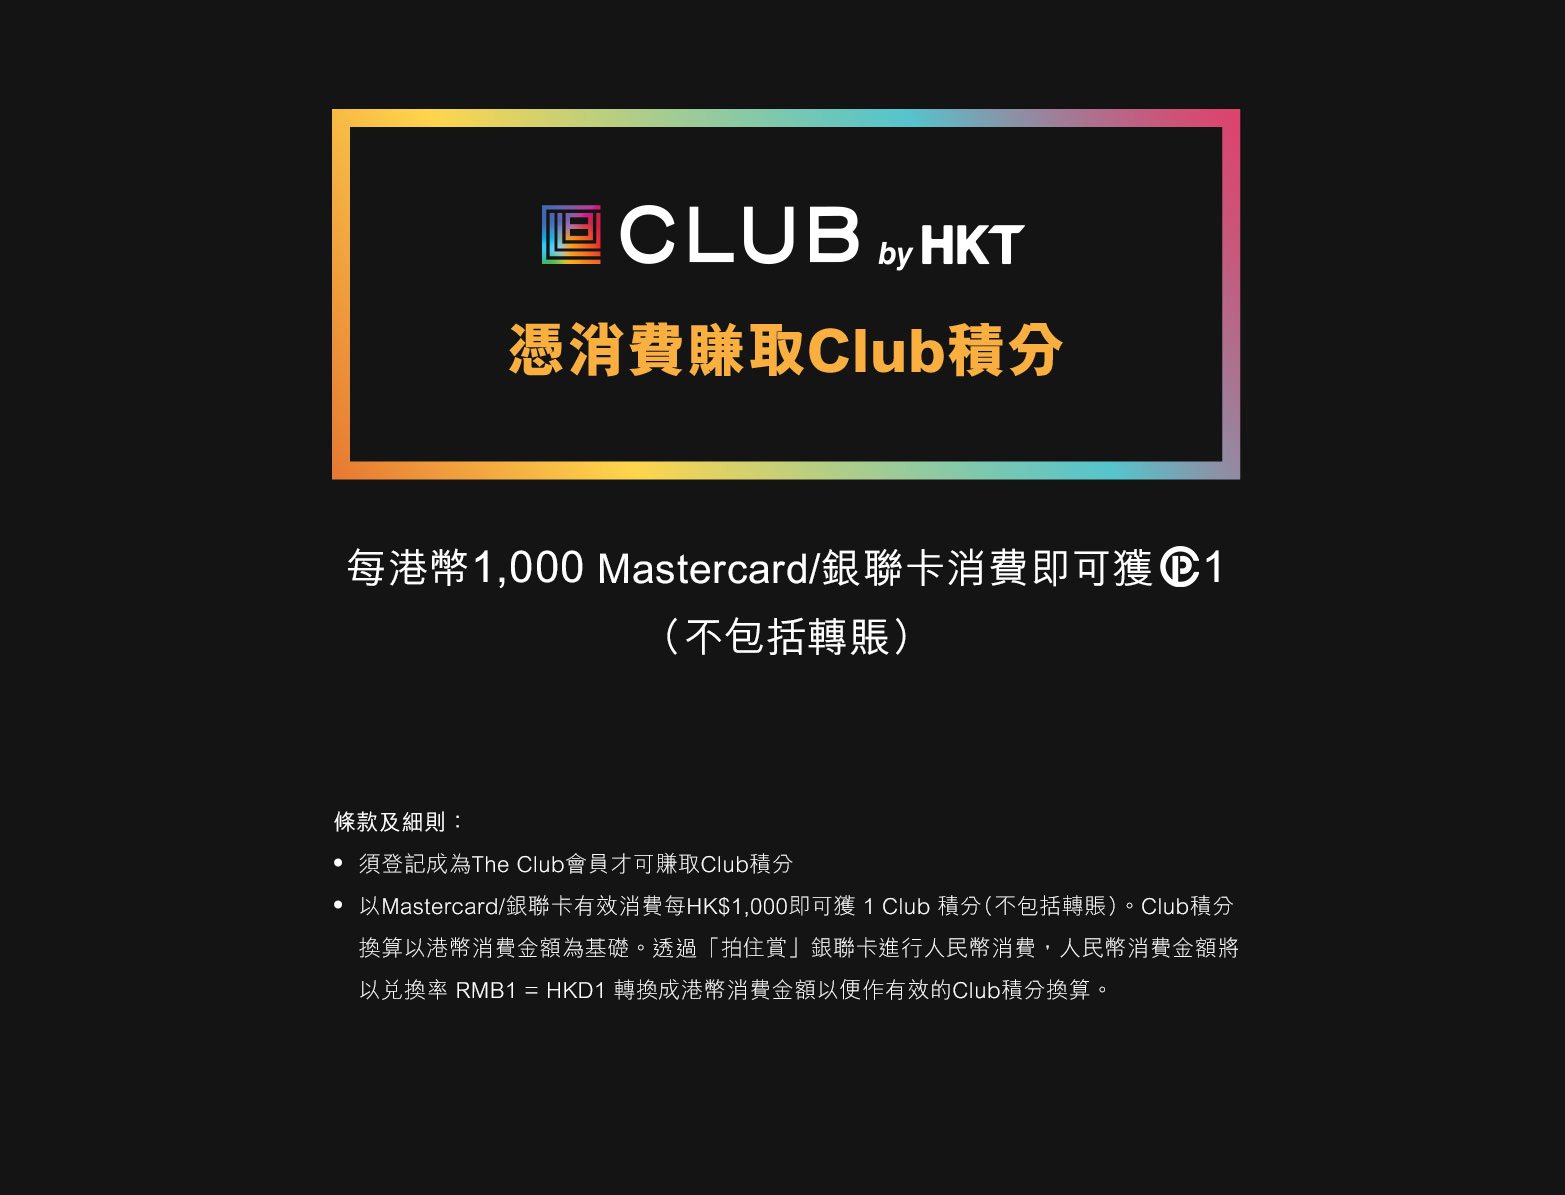 CLUB by HKT - 憑消費賺取Club積分